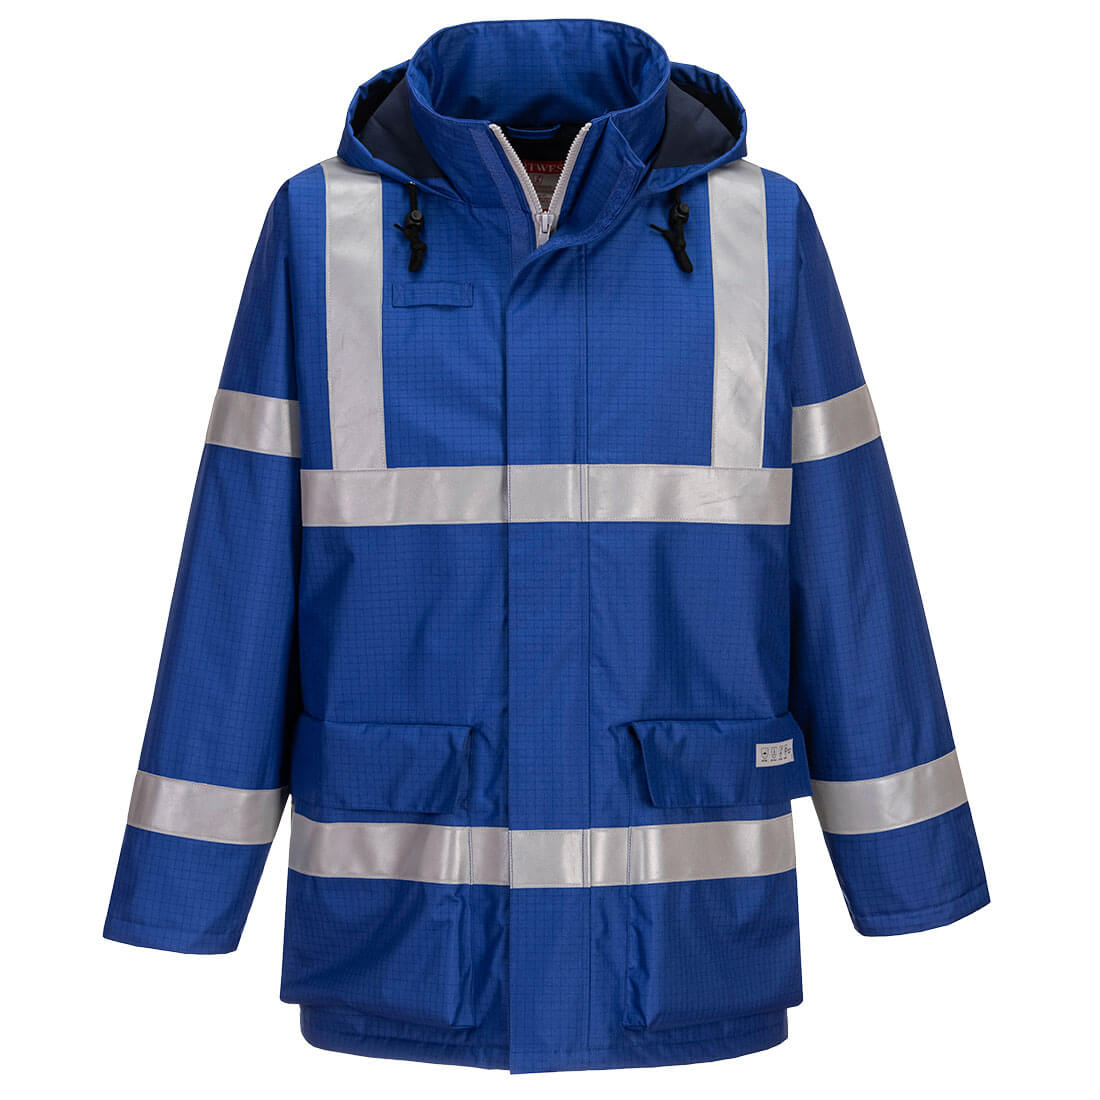 Bizflame Rain Anti-Static FR Jacket - Royal Blue